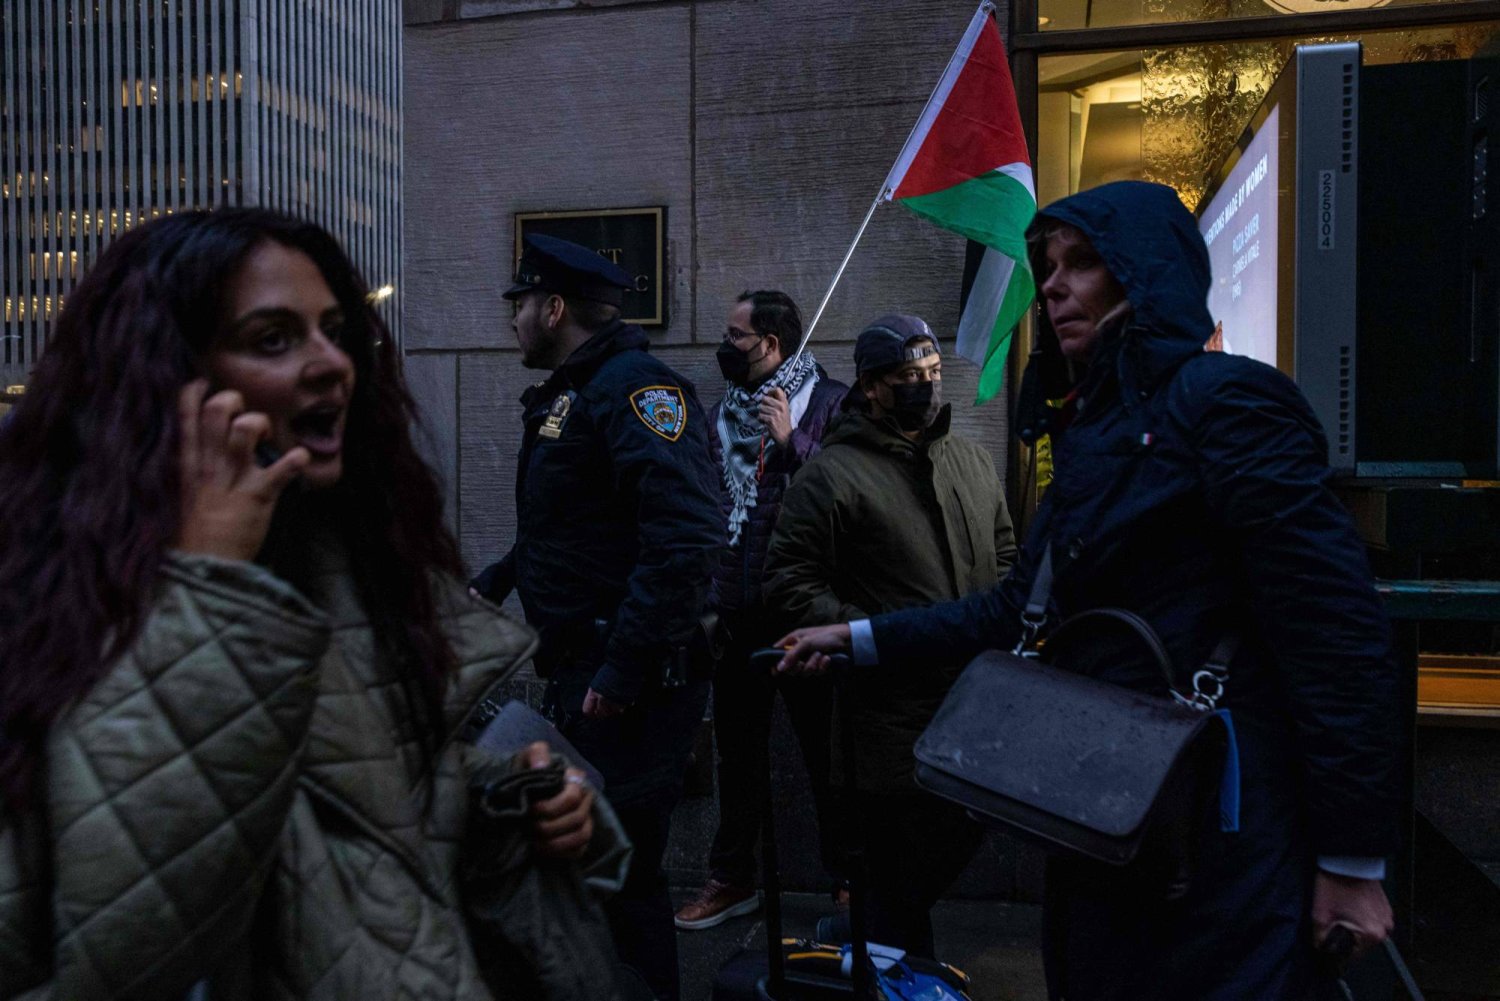 متظاهرون مؤيدون للفلسطينيين يتجمعون خارج قاعة خلال حفل جمع التبرعات للرئيس جو بايدن (أ.ف.ب)